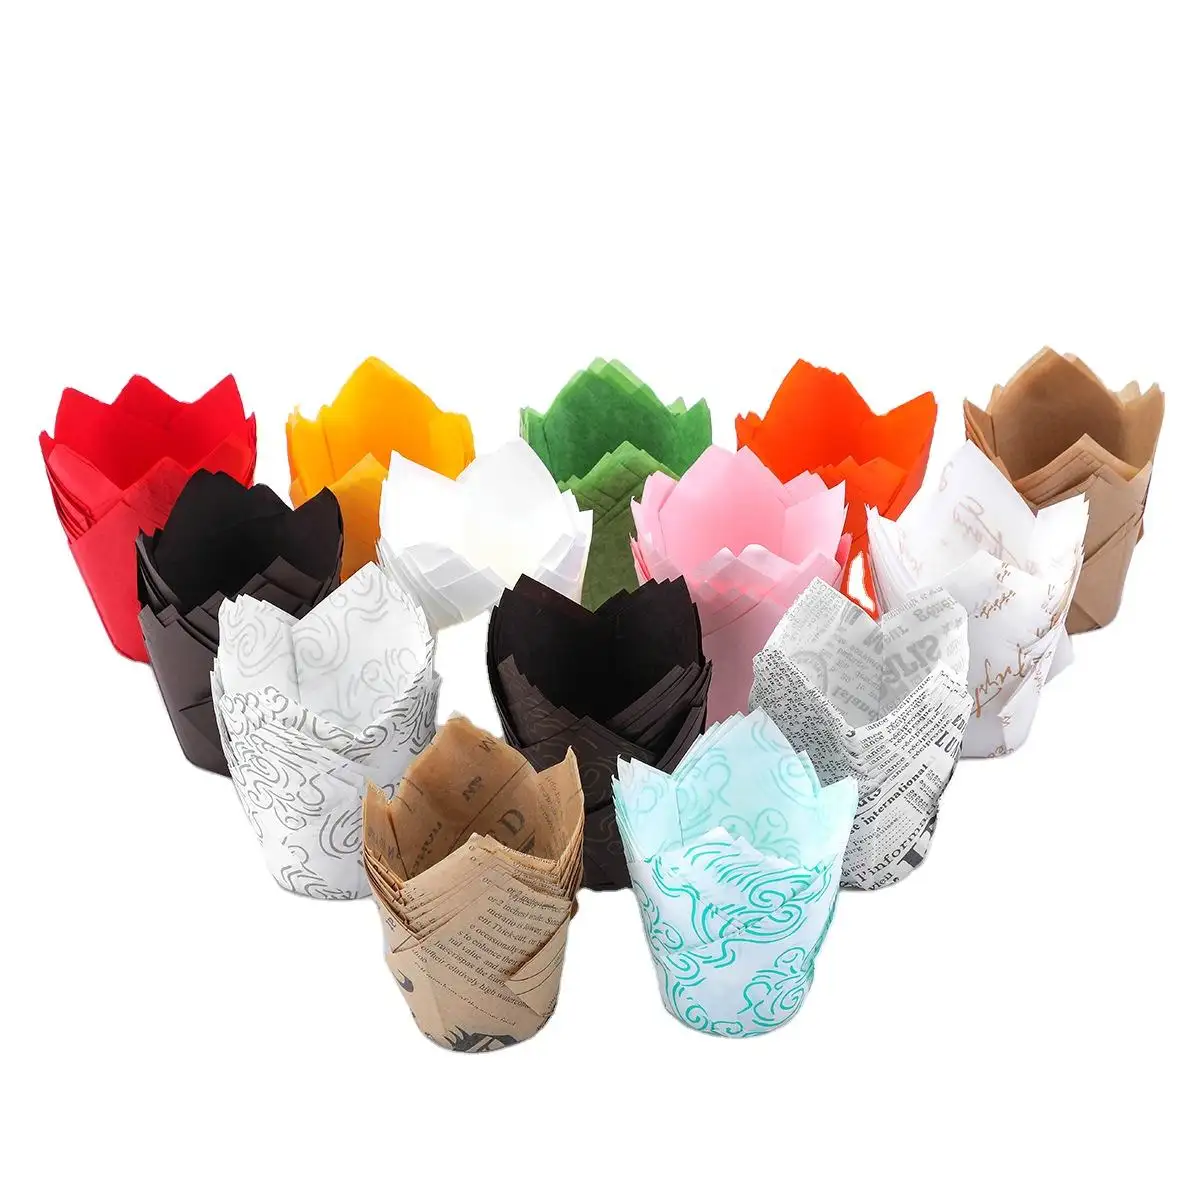 Mini gobelets jetables pour cupcakes Bote tulipe carton ondulé de qualité supérieure acrylique papier sulfurisé gobelets conteneurs moule vente en gros